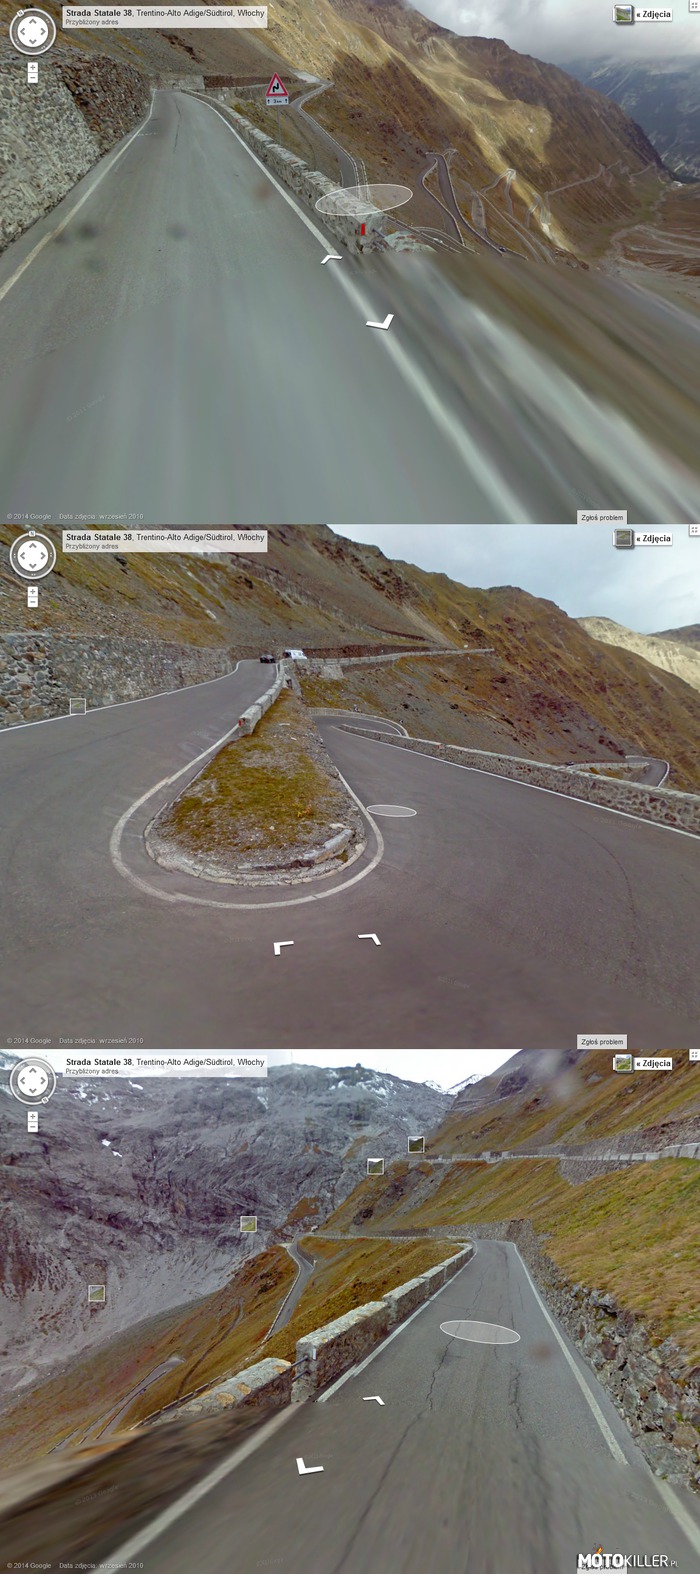 Podróż przez Alpy z Google Street View – Odc.1 Strada Statale 38 (SS38), Trentino-Alto Adige/Sudtirol Włochy 